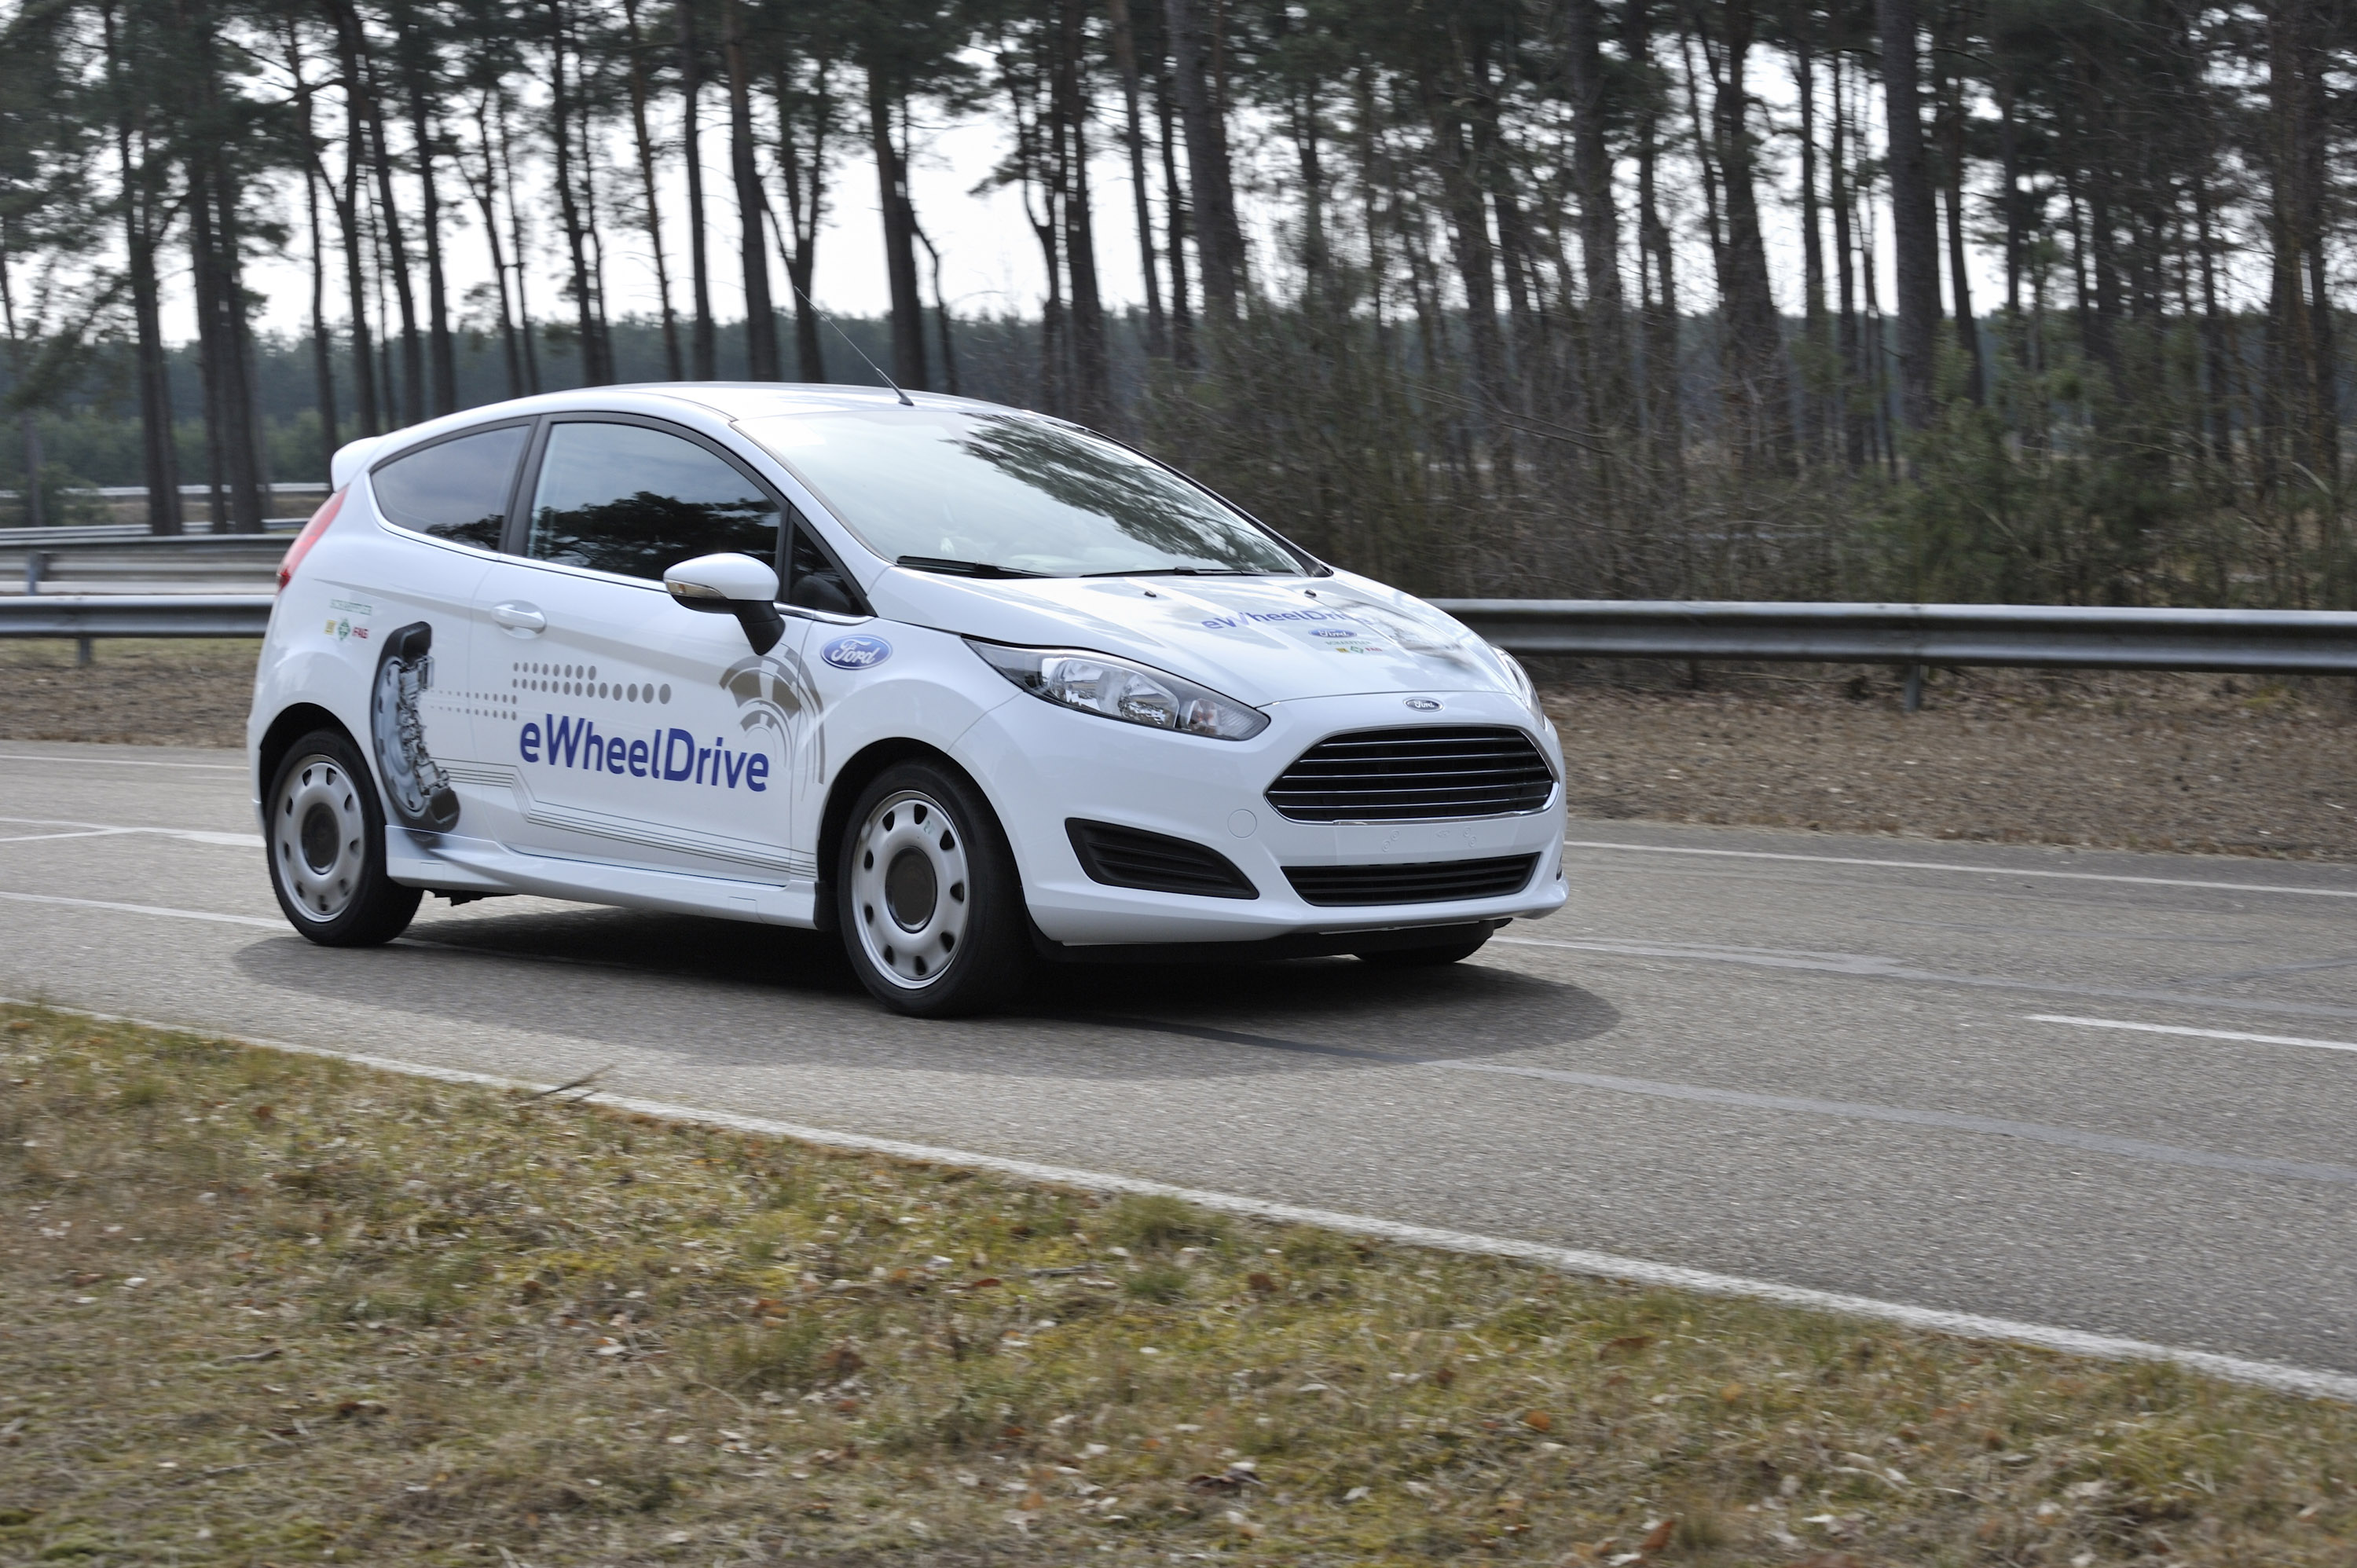 Ford Fiesta-Based eWheelDrive